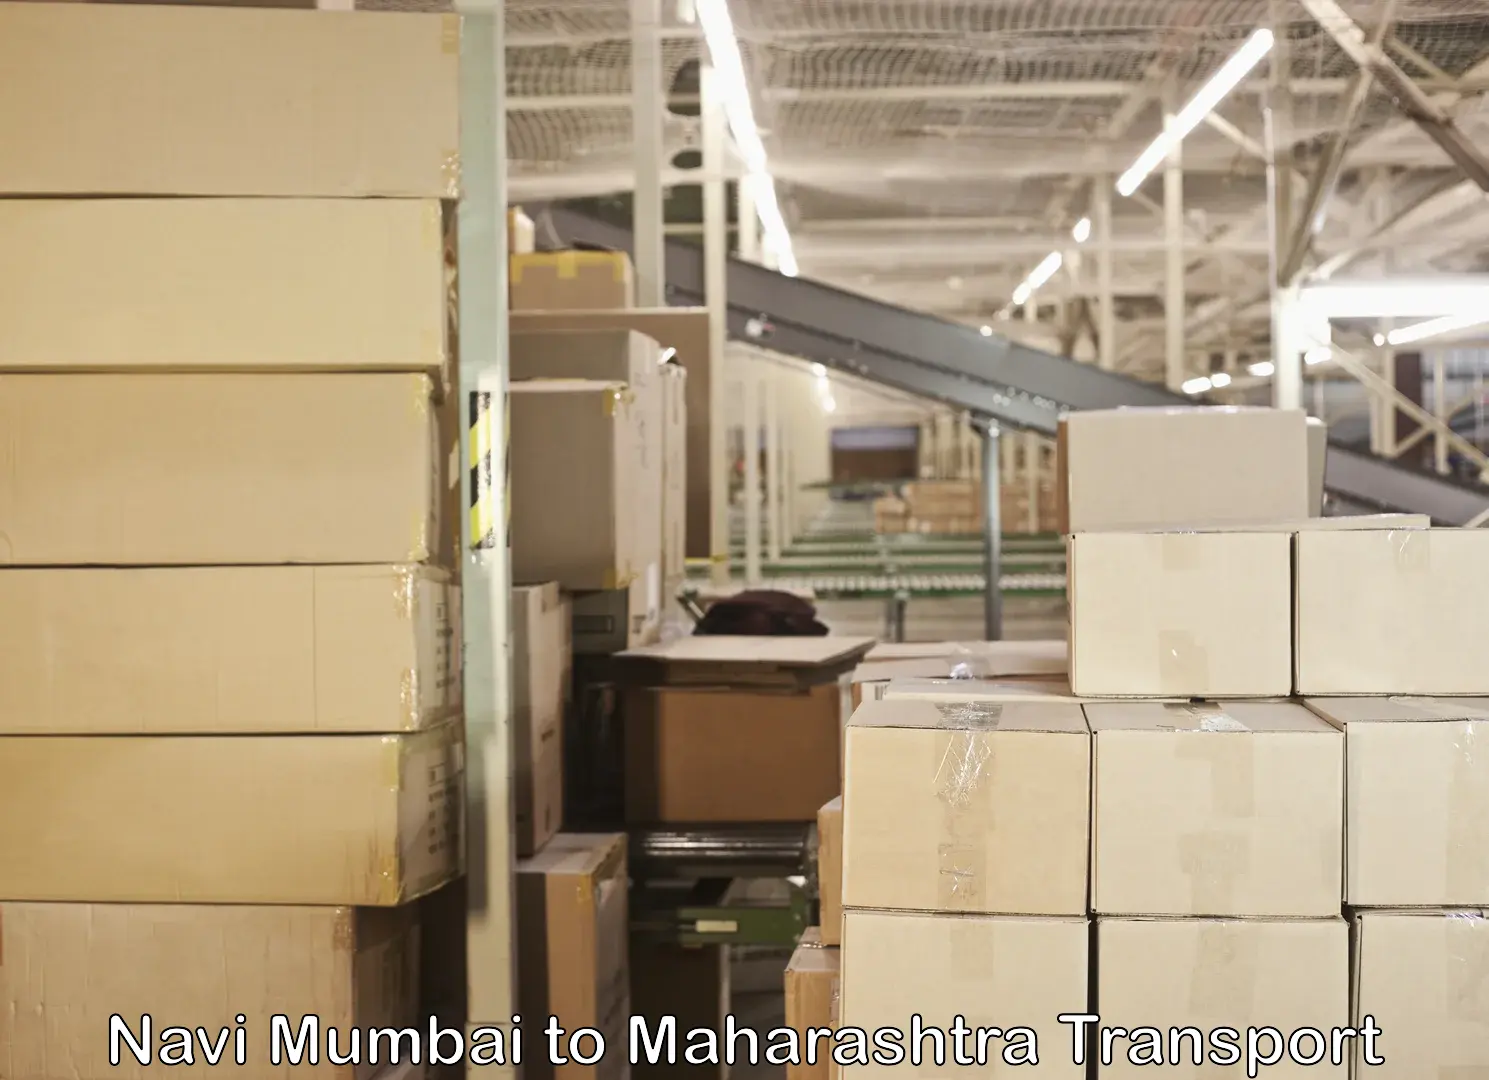 Daily parcel service transport Navi Mumbai to Maharashtra